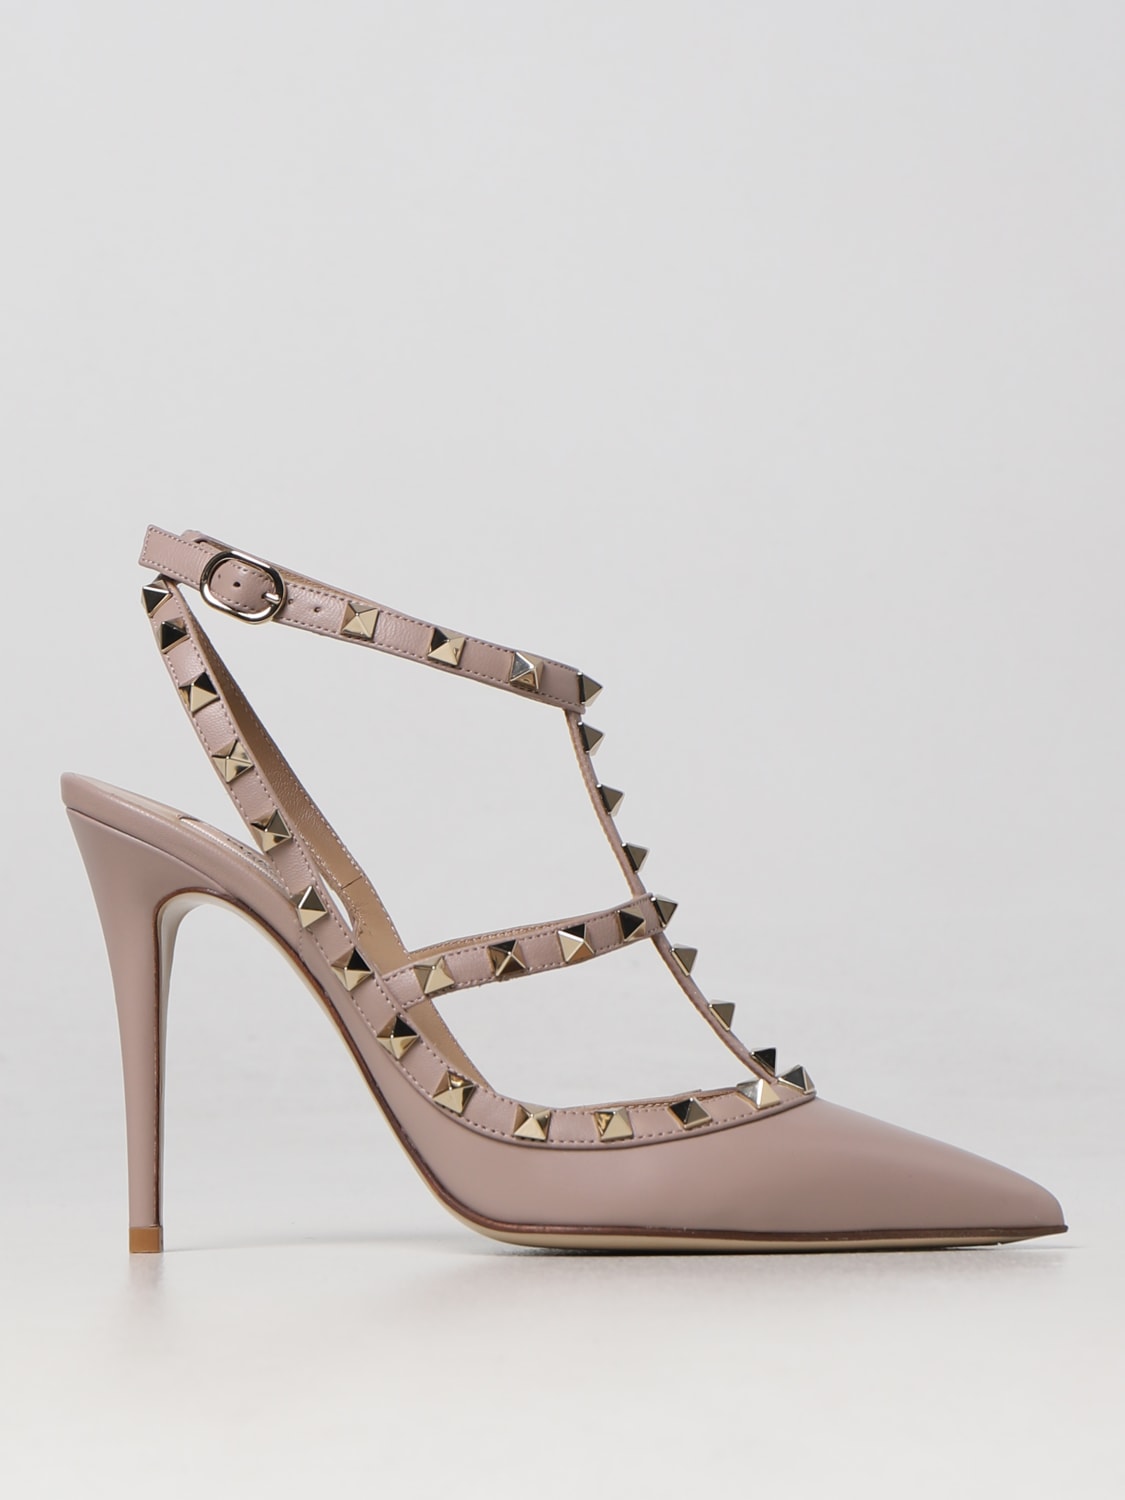 VALENTINO GARAVANI: leather pumps with Studs - Blush Pink | Valentino Garavani heel shoes 2W2S0393VOD online on